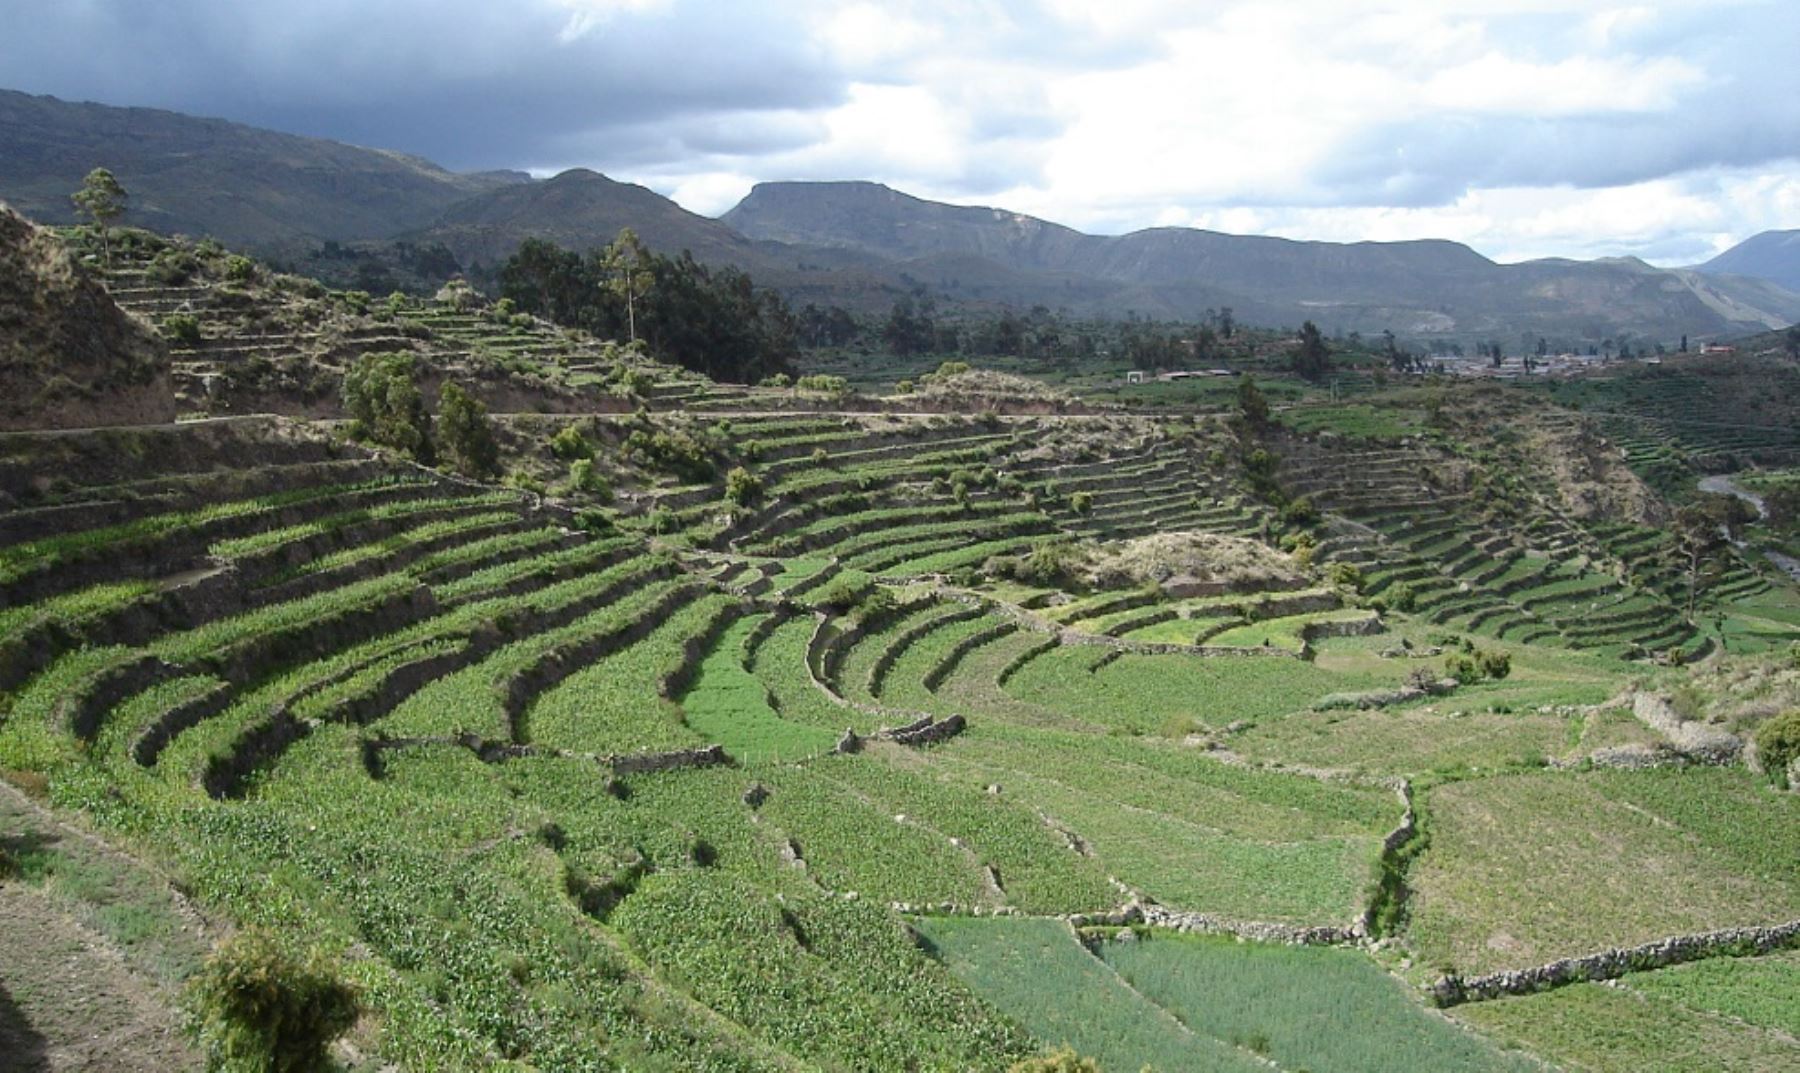 Una de las estrategias que está permitiendo al Perú enfrentar con buenos resultados el impacto del cambio climático y la escasa disponibilidad de agua para la agricultura y el consumo humano, es la “siembra y cosecha de agua”, una de las máximas expresiones de la cultura hídrica andina ancestral que permitió garantizar la sostenibilidad agrícola.